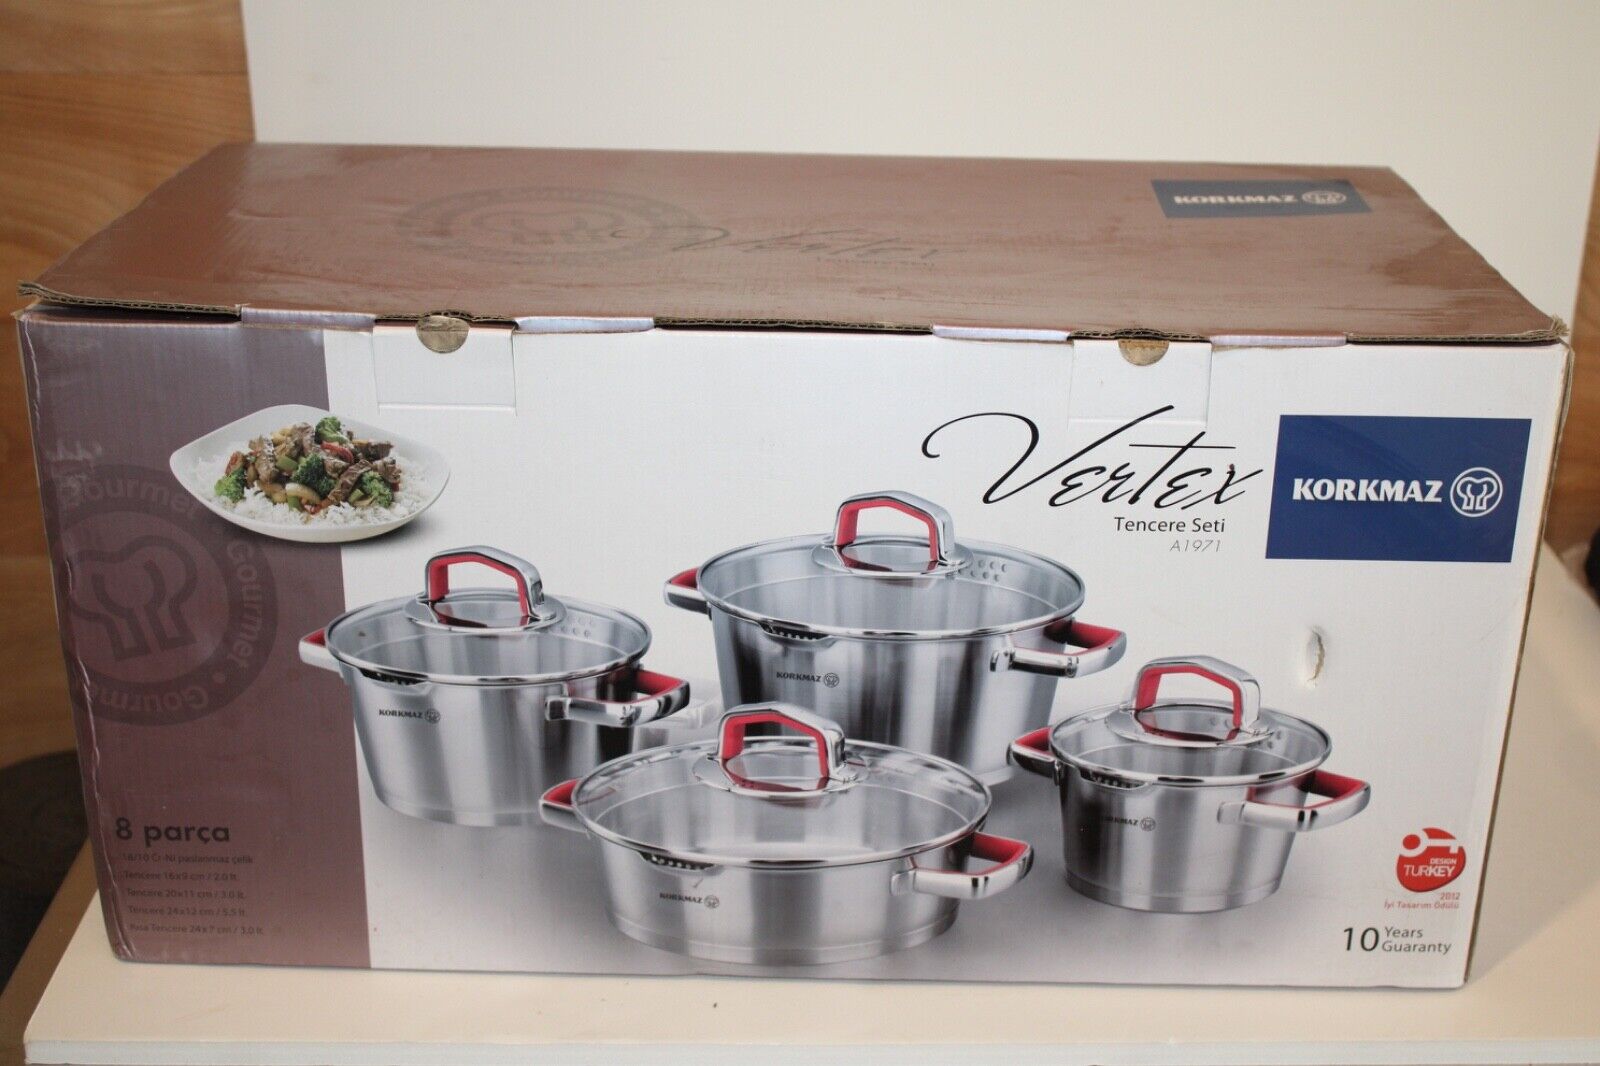 Korkmaz Vertex 8 Piece Cookware Set A1971 New in box